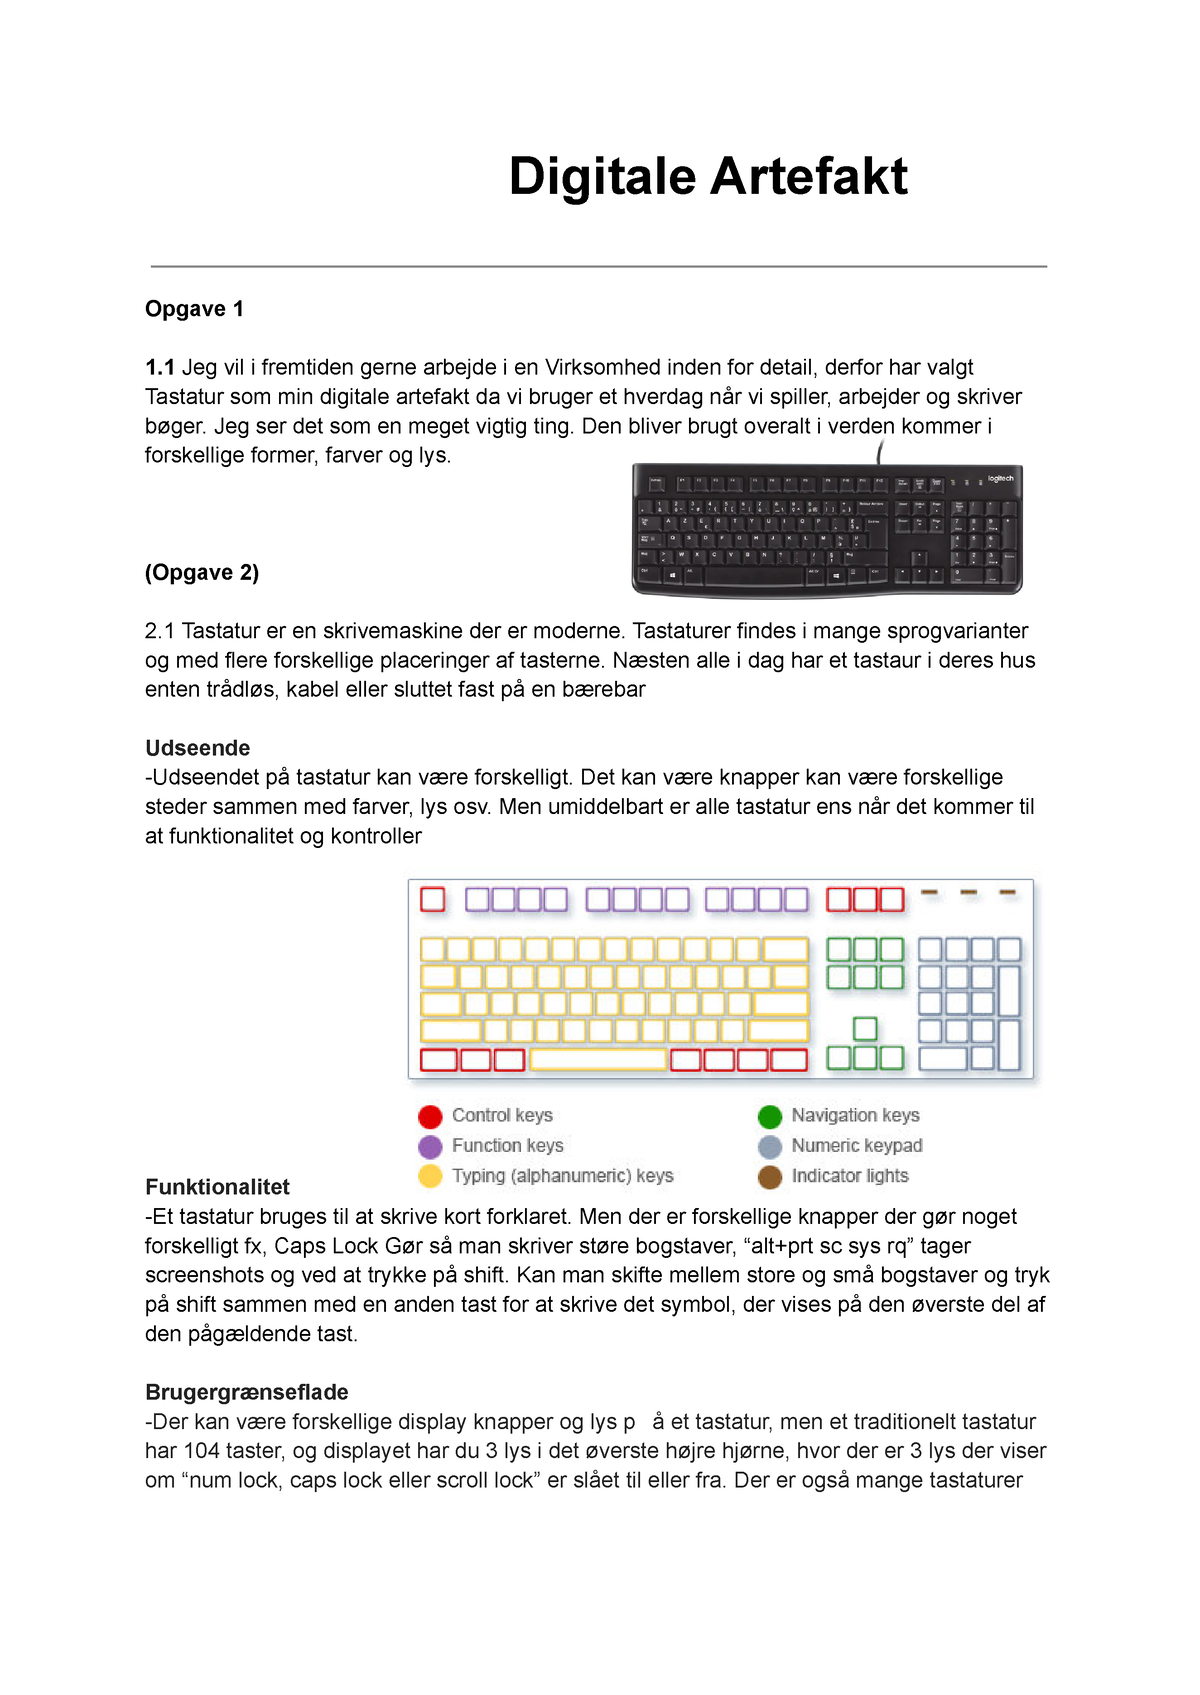 Digitale Artefakt Tastatur - Digitale Artefakt Opgave 1 1 vil i arbejde i en - Studocu